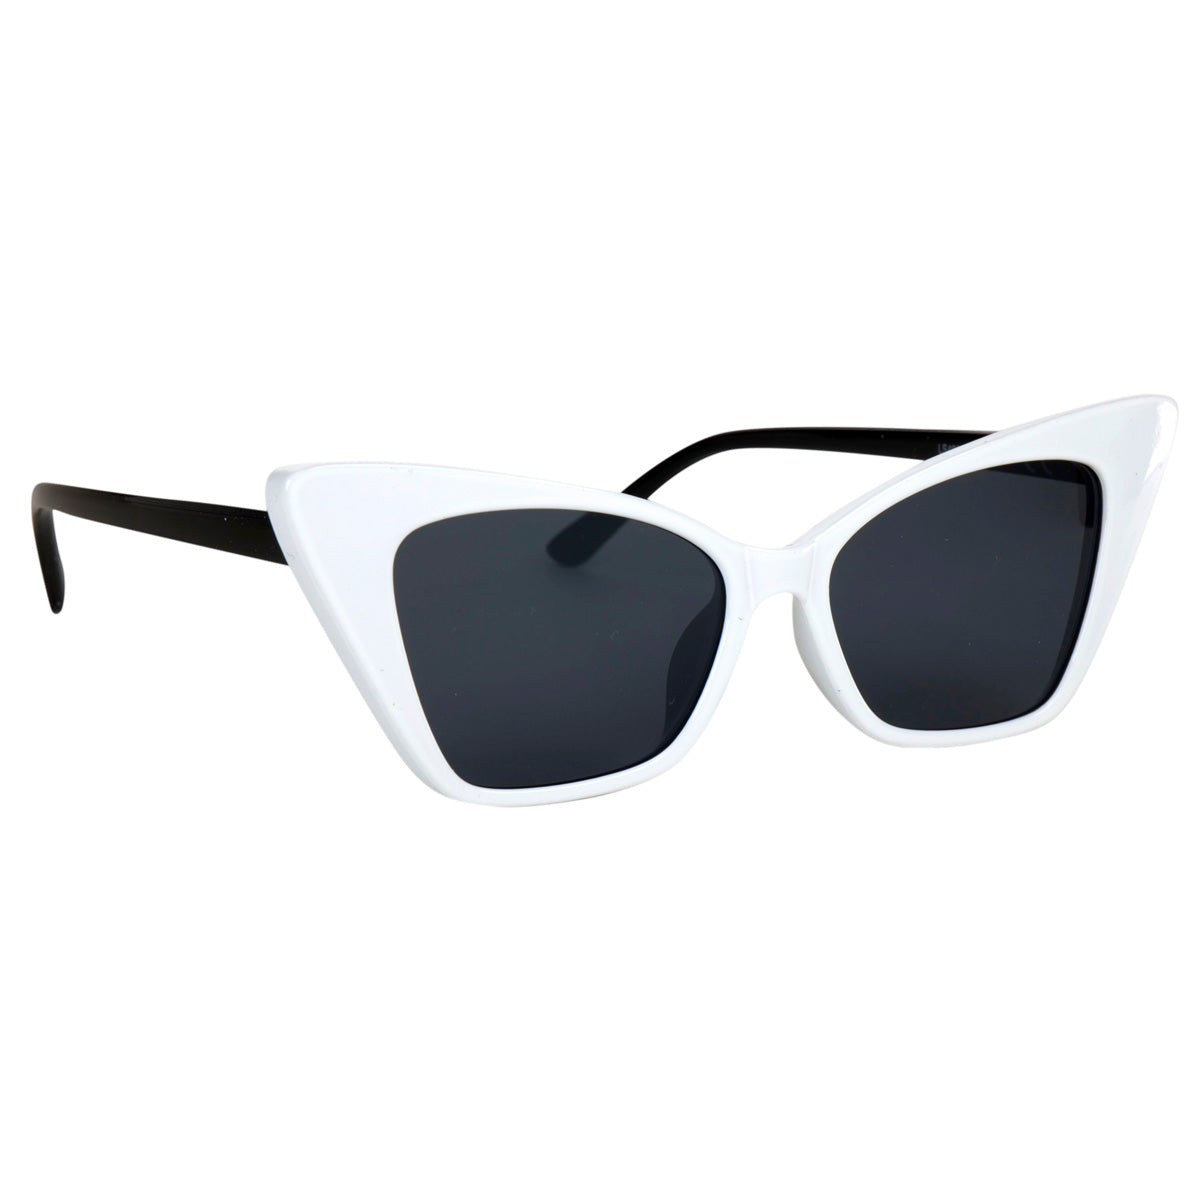 Cat sunglasses